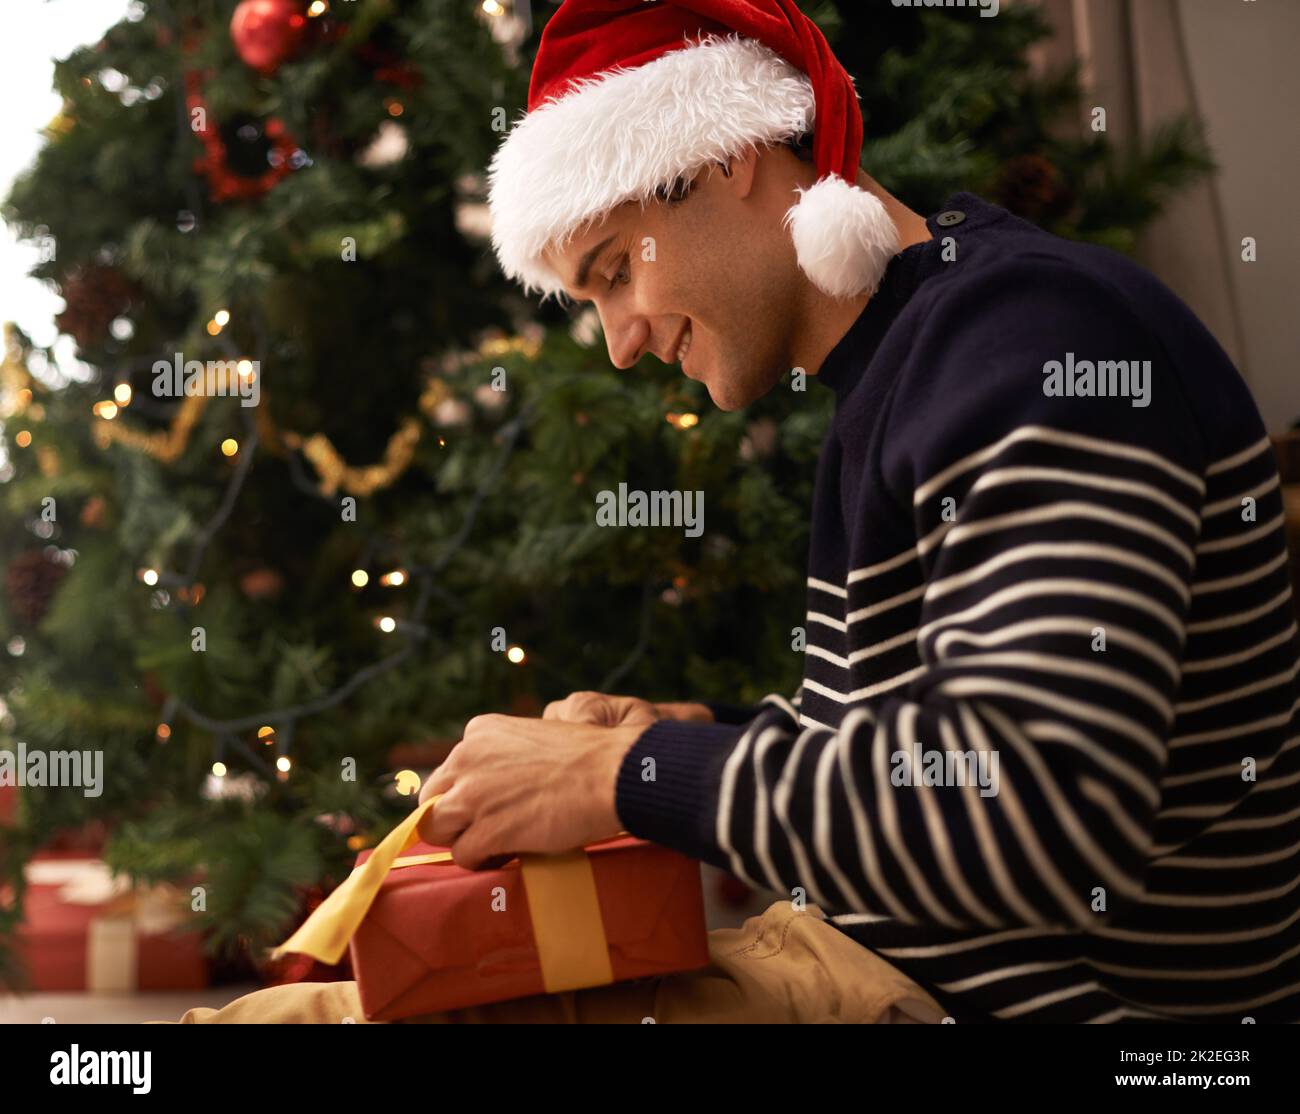 Verbreitung des Weihnachtsgeistes. Aufnahme eines hübschen jungen Mannes, der sich auf Weihnachten vorbereitet. Stockfoto